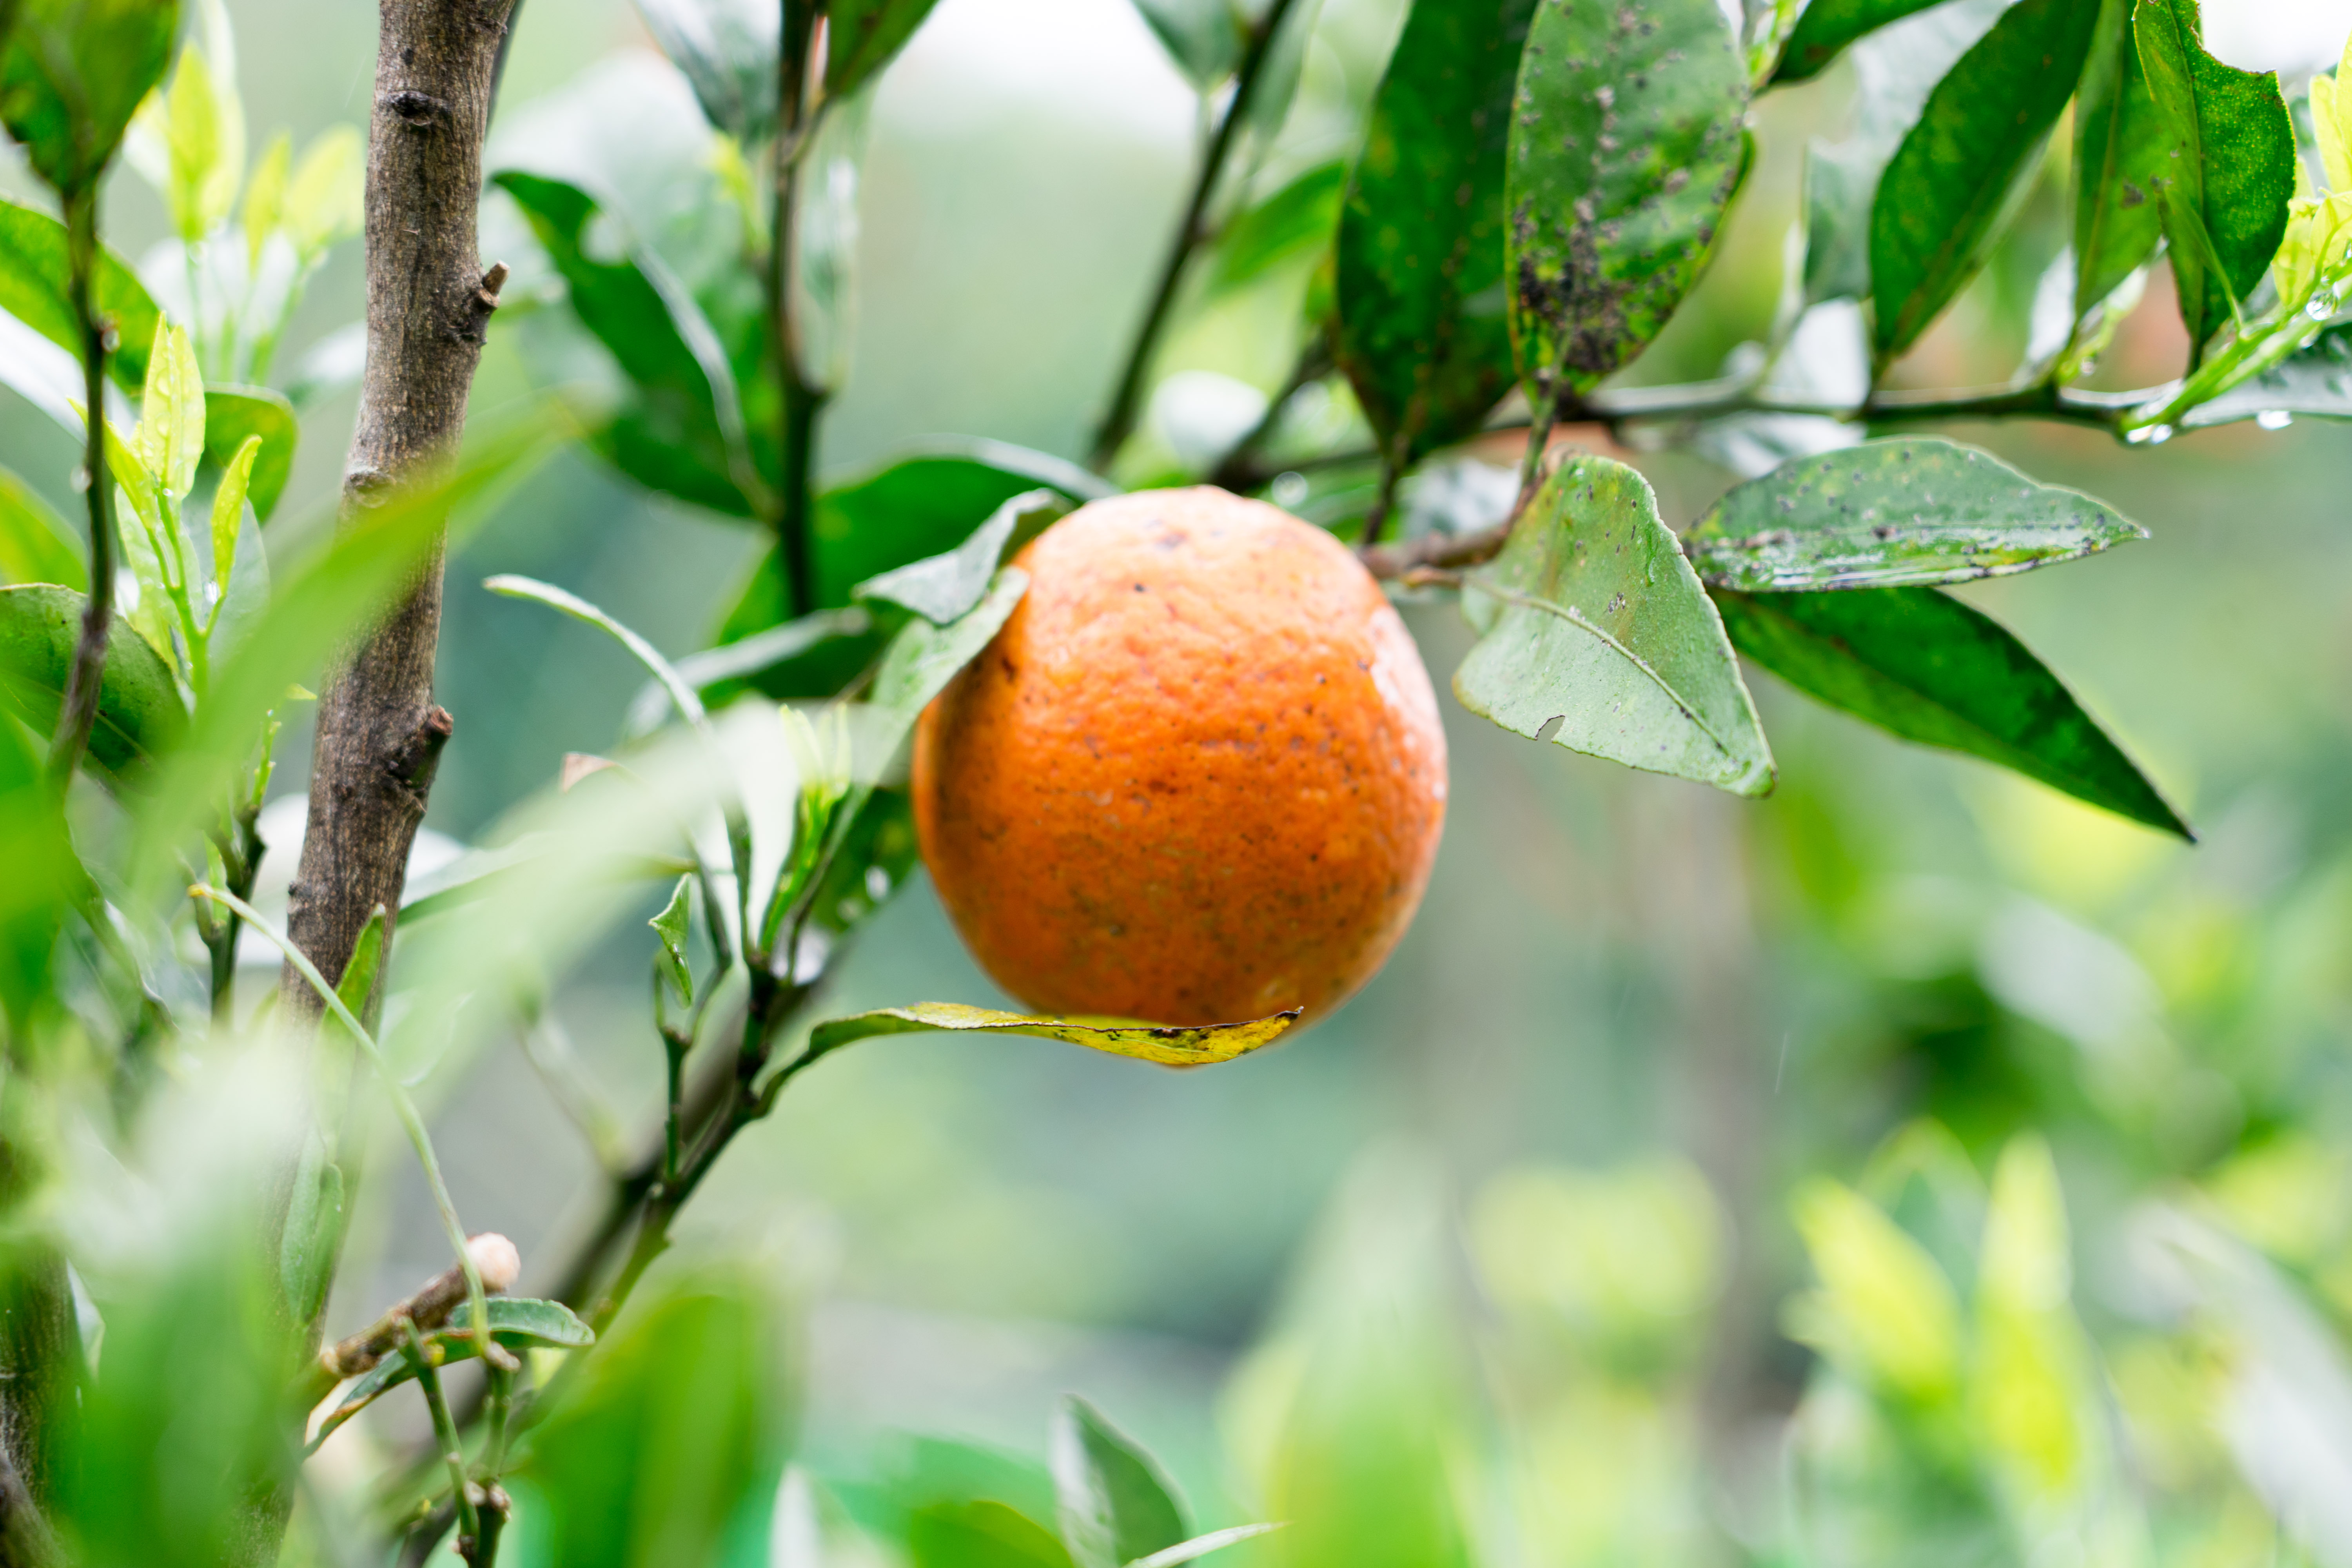 友咭農園的有機橘子酸甜適中、口感細緻、香氣飽滿。